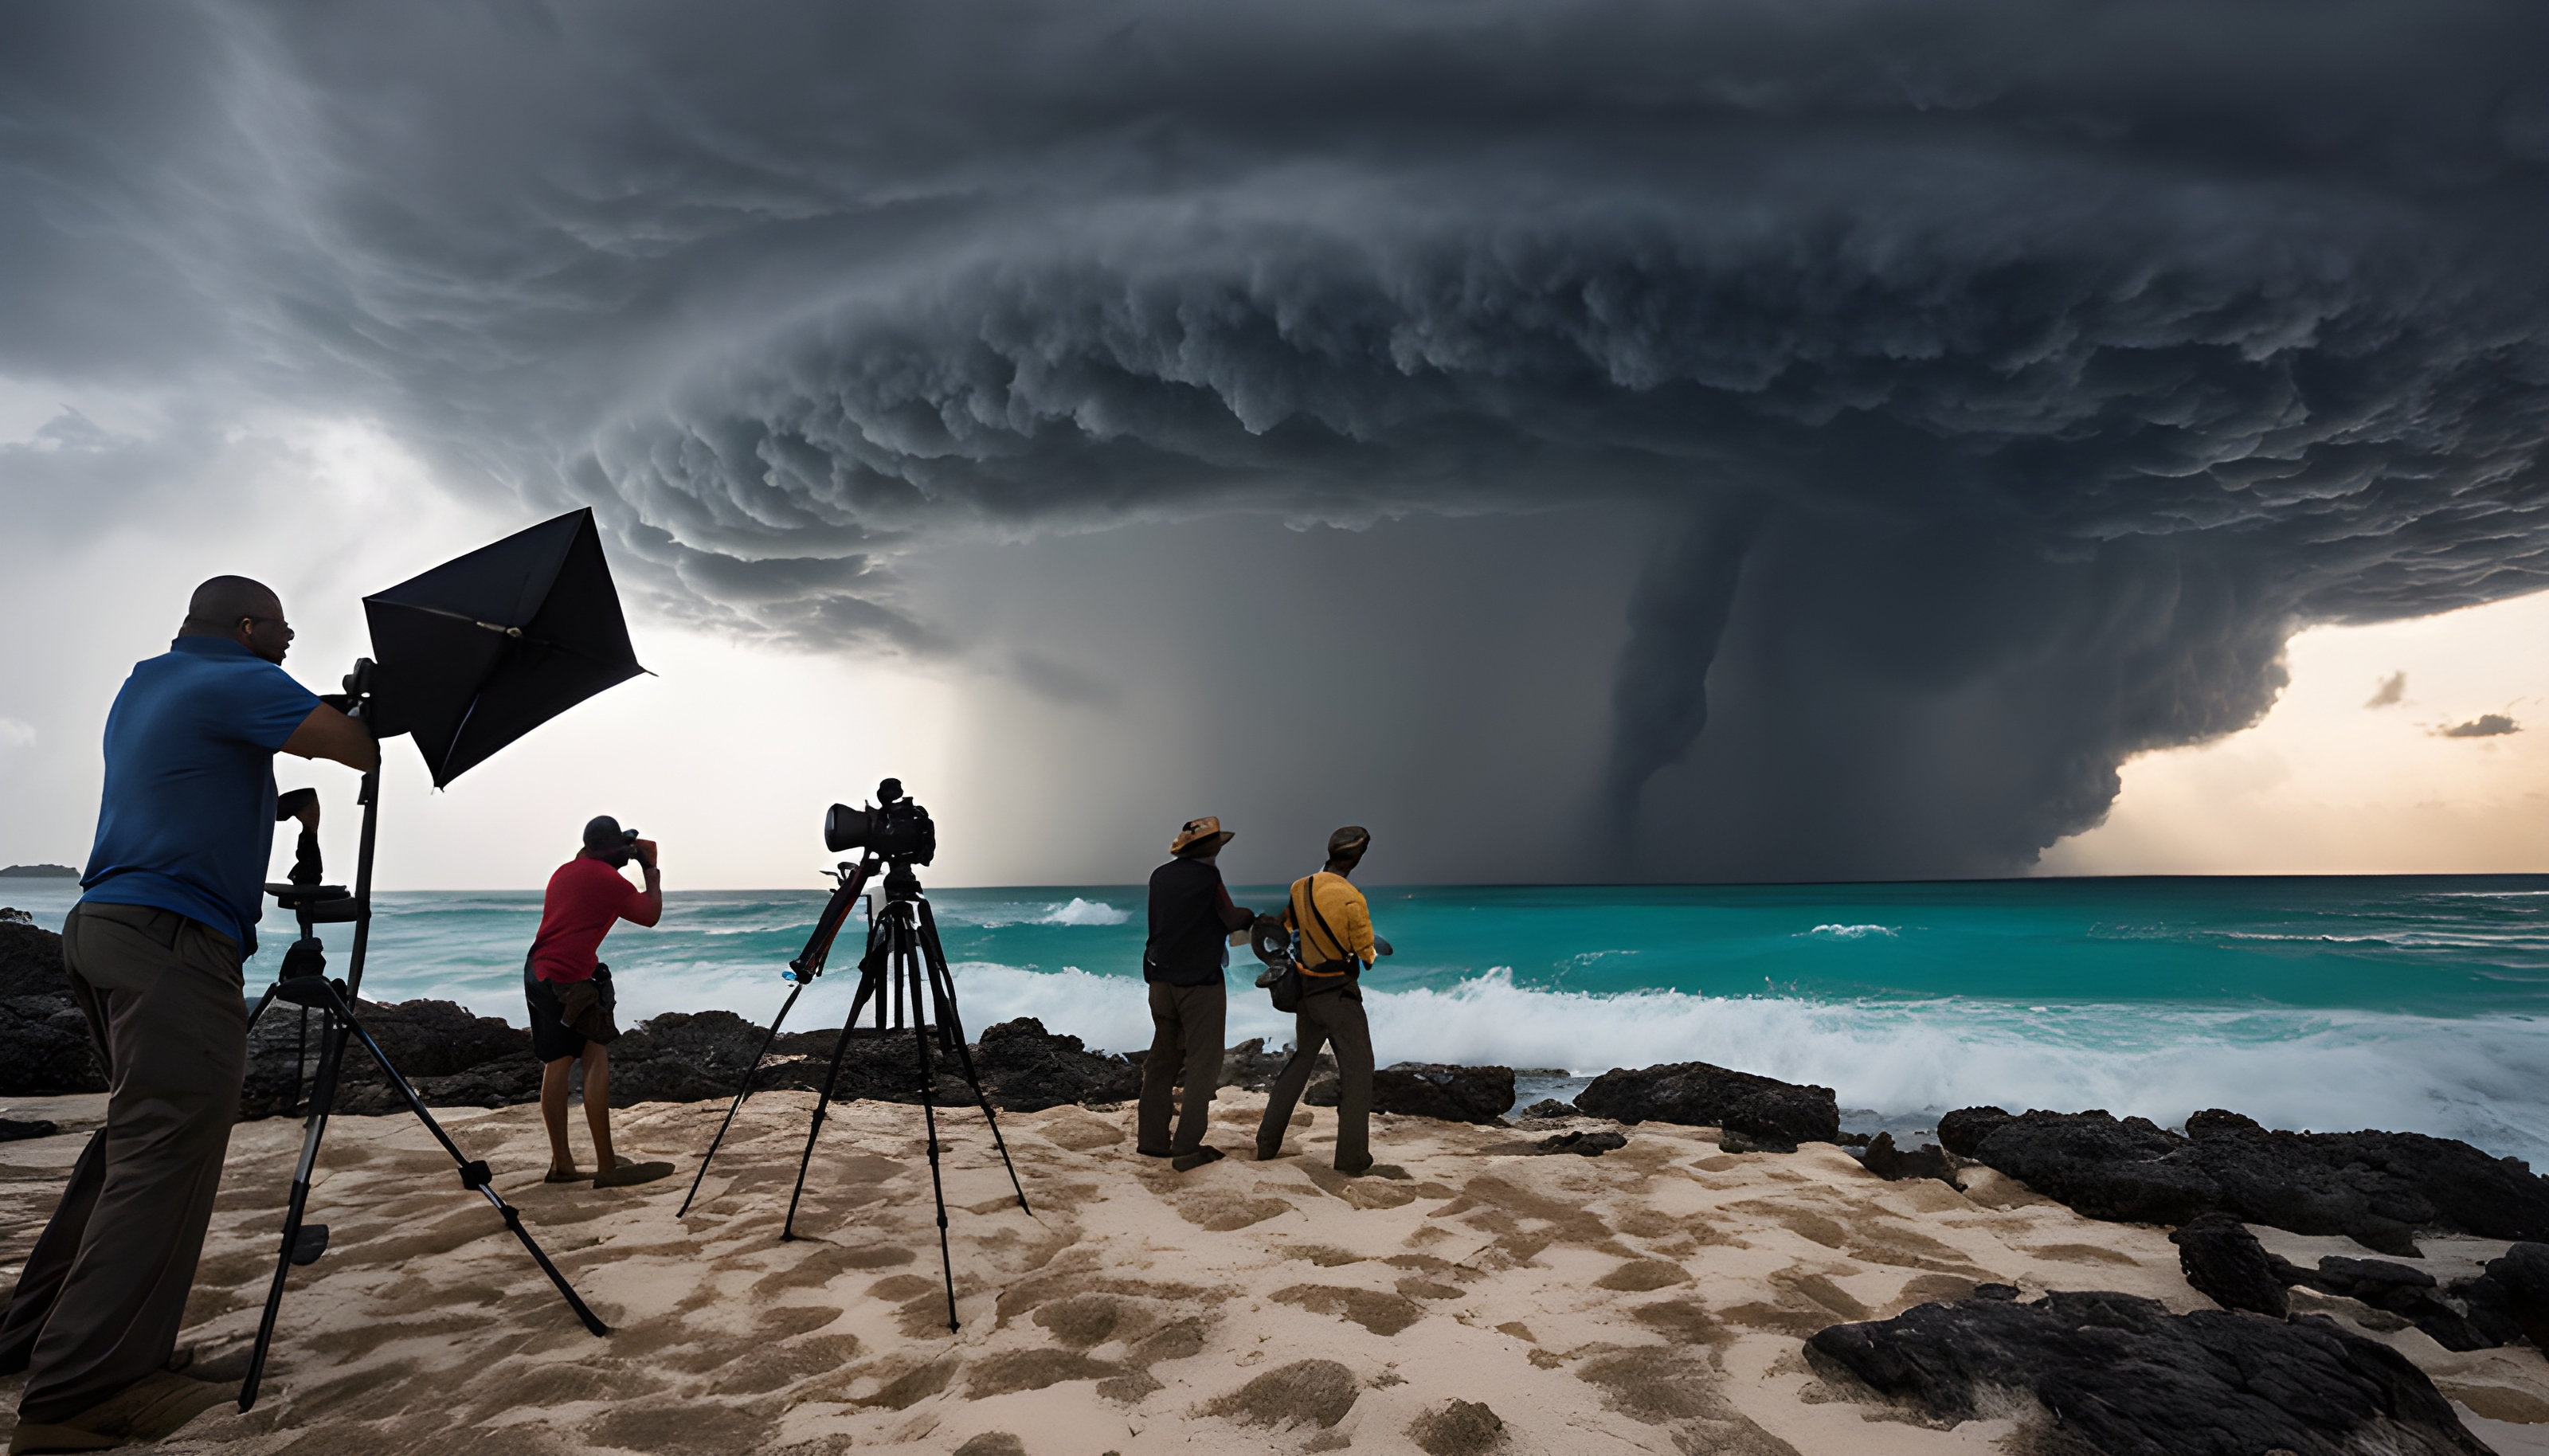 สร้างภาพถ่ายสุดสมจริง ทีมช่างภาพมืออาชีพ กำลังถ่ายภาพบนเกาะสวรรค์ ท่ามกลางพายุหมุนที่กำลังก่อตัวเข้ามาใกล้